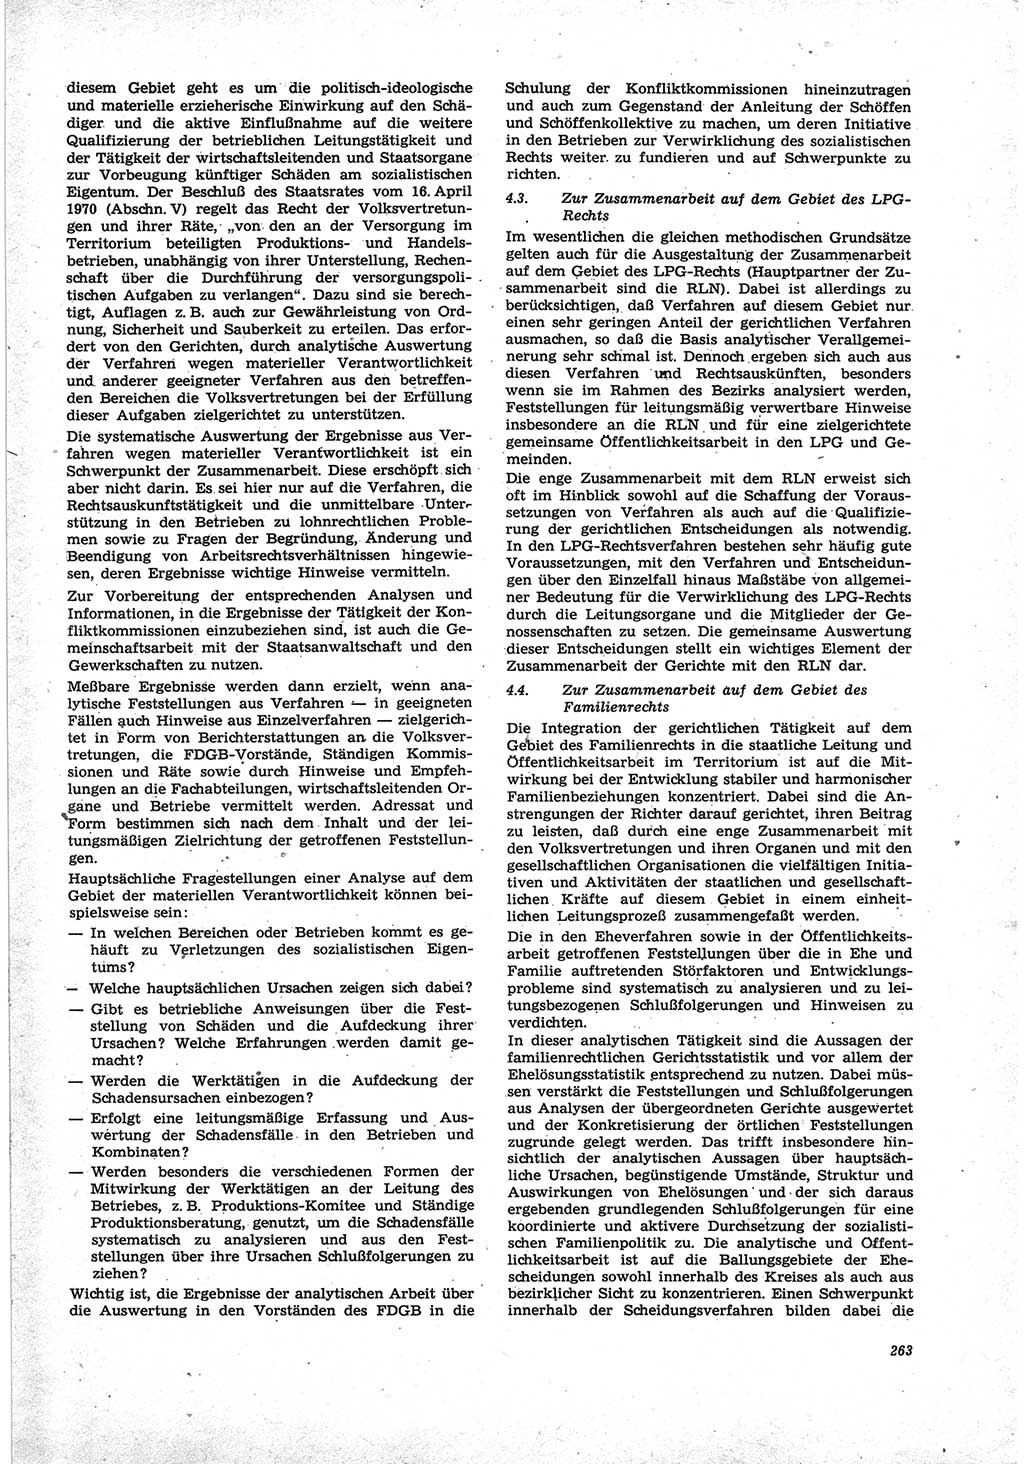 Neue Justiz (NJ), Zeitschrift für Recht und Rechtswissenschaft [Deutsche Demokratische Republik (DDR)], 25. Jahrgang 1971, Seite 263 (NJ DDR 1971, S. 263)